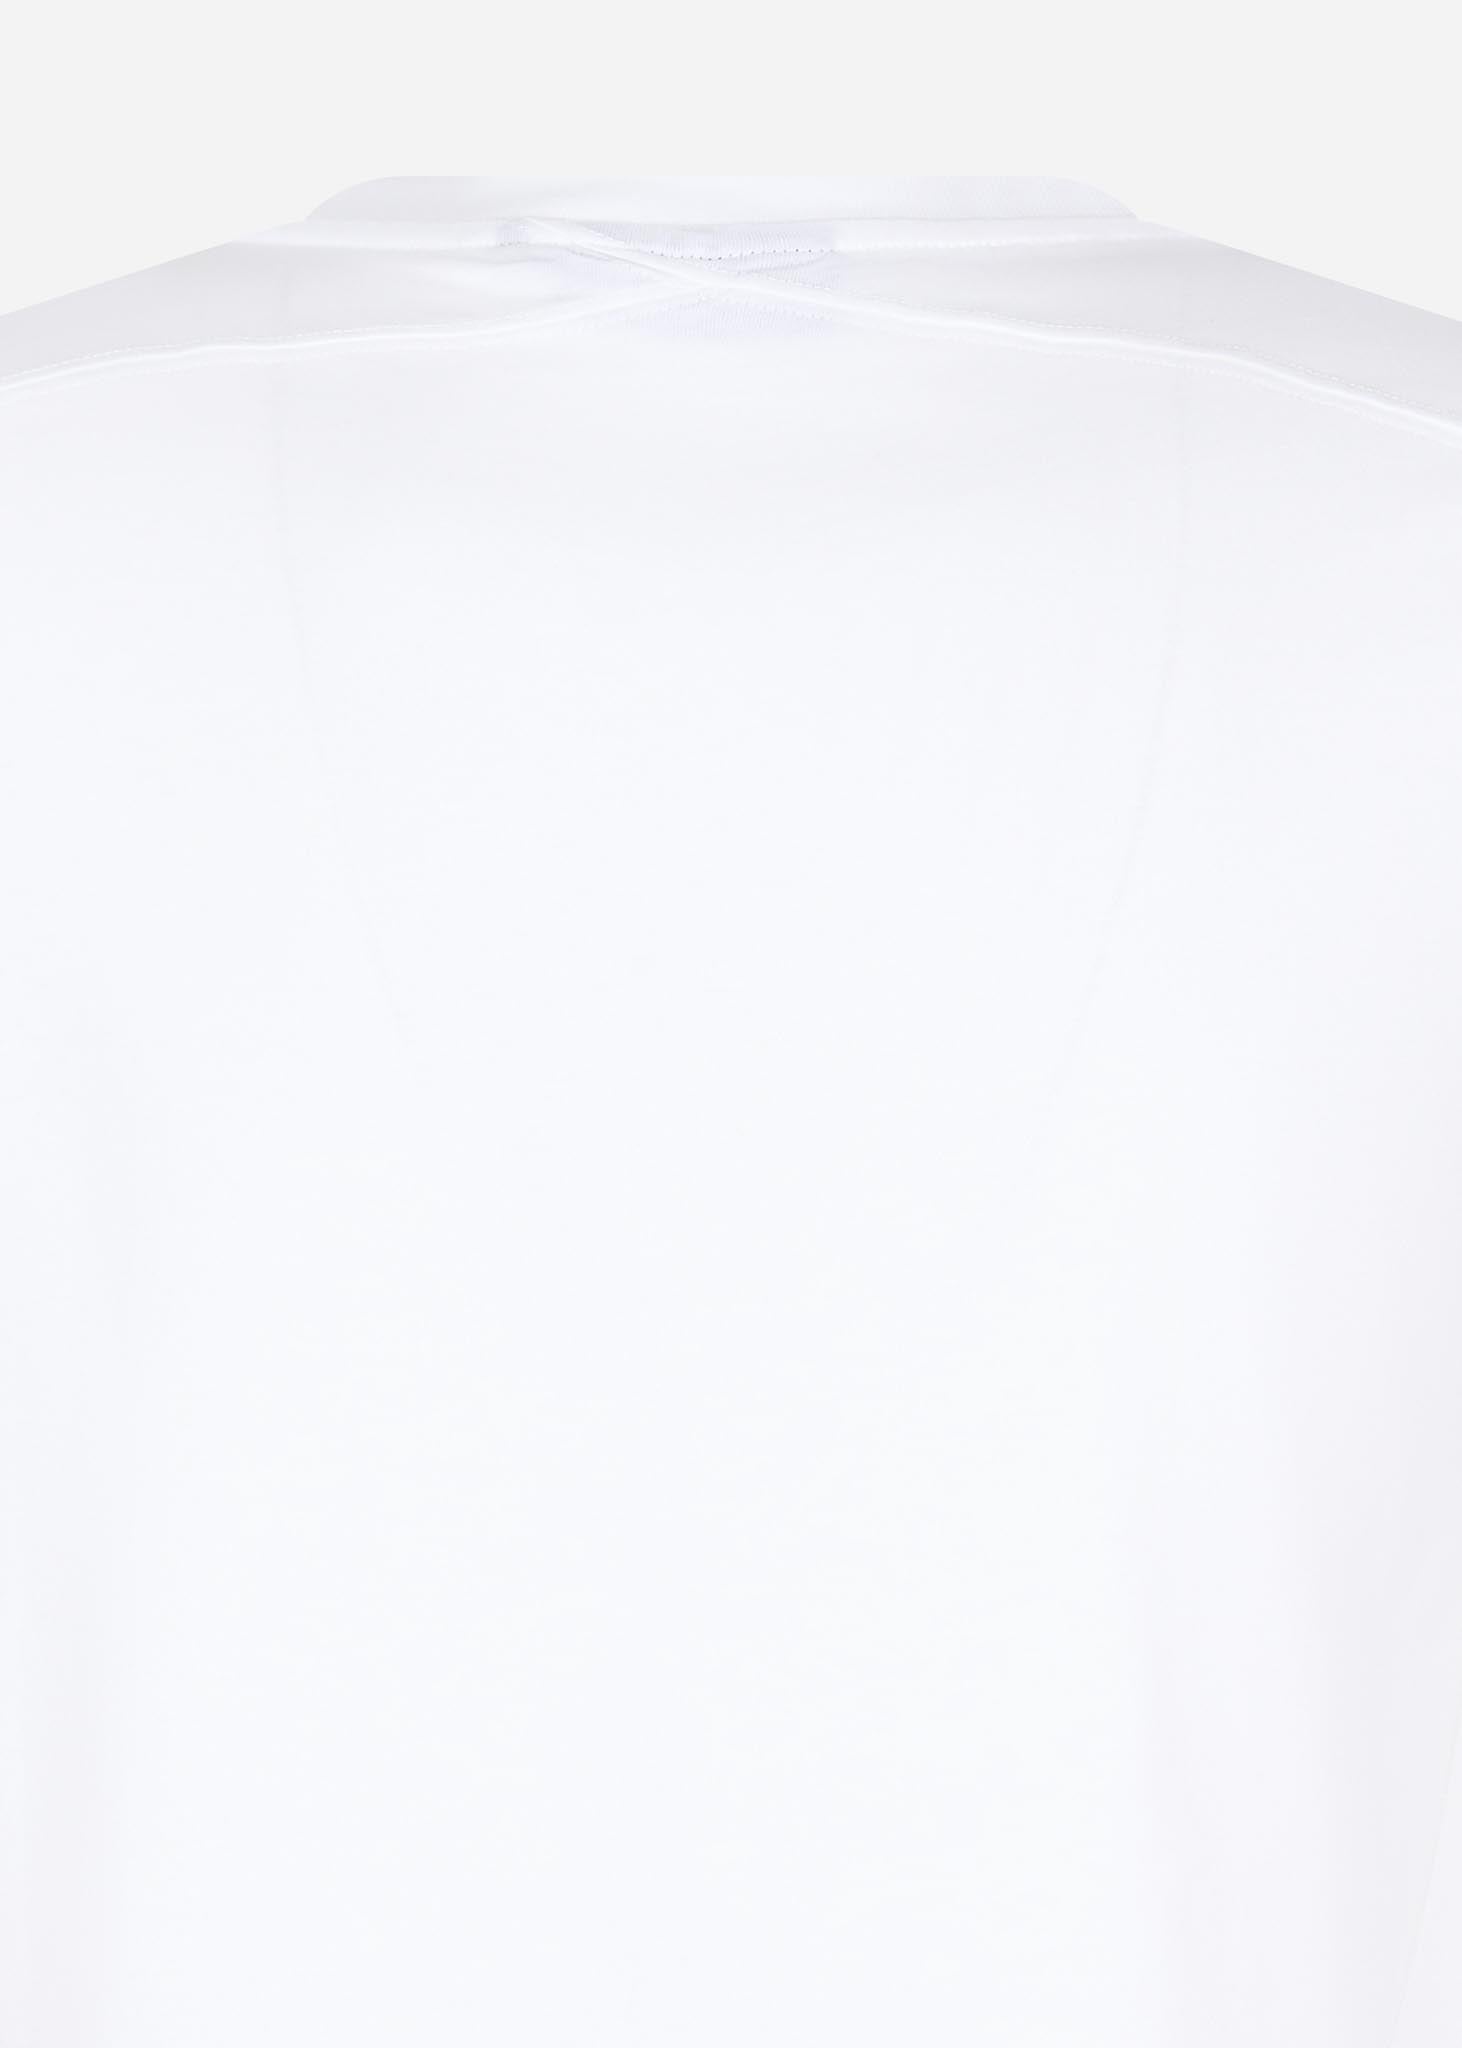 mastrun icon tee optic white t-shirt